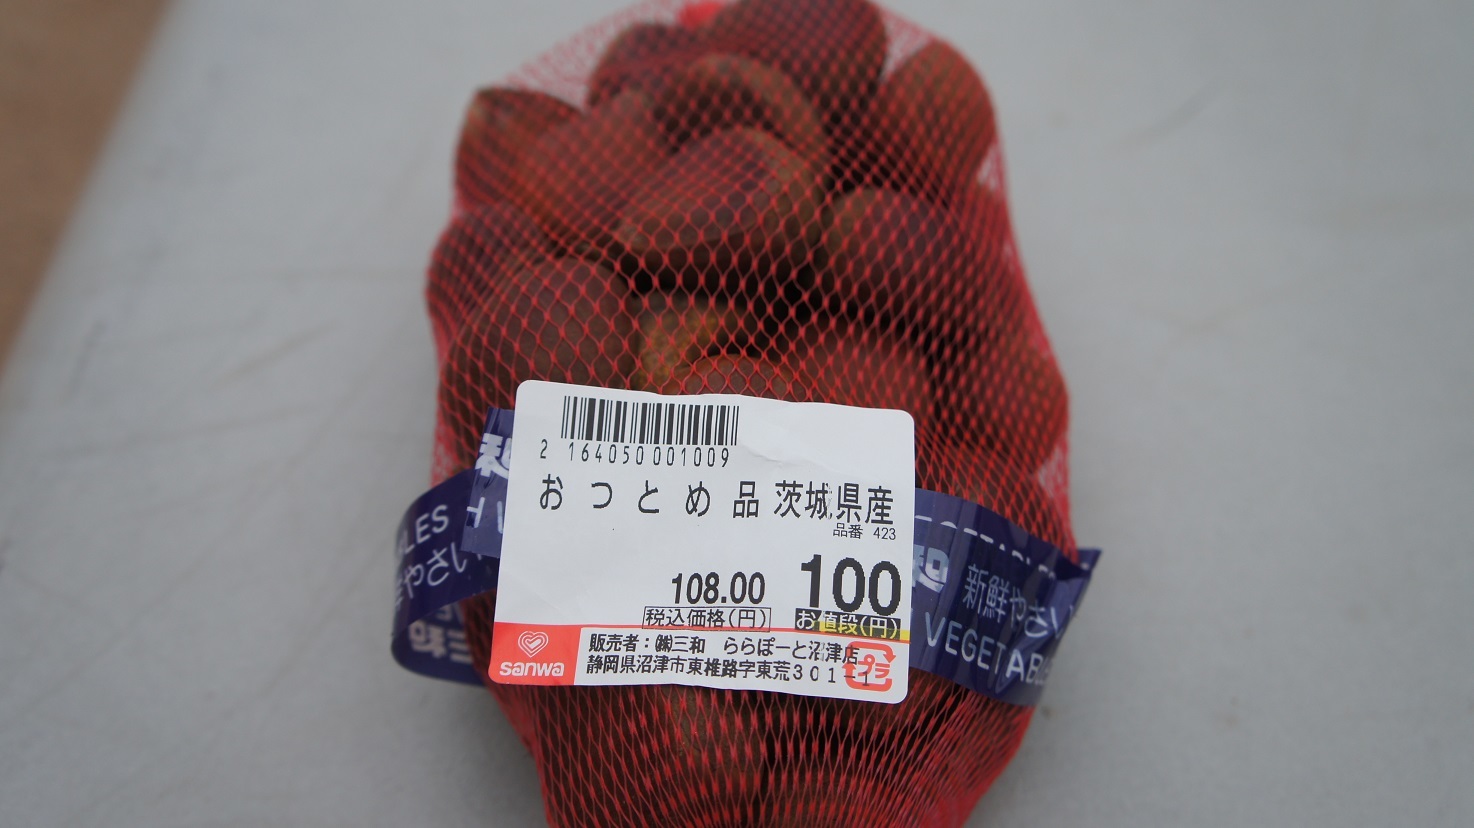 スーパー三和で買った100円の栗